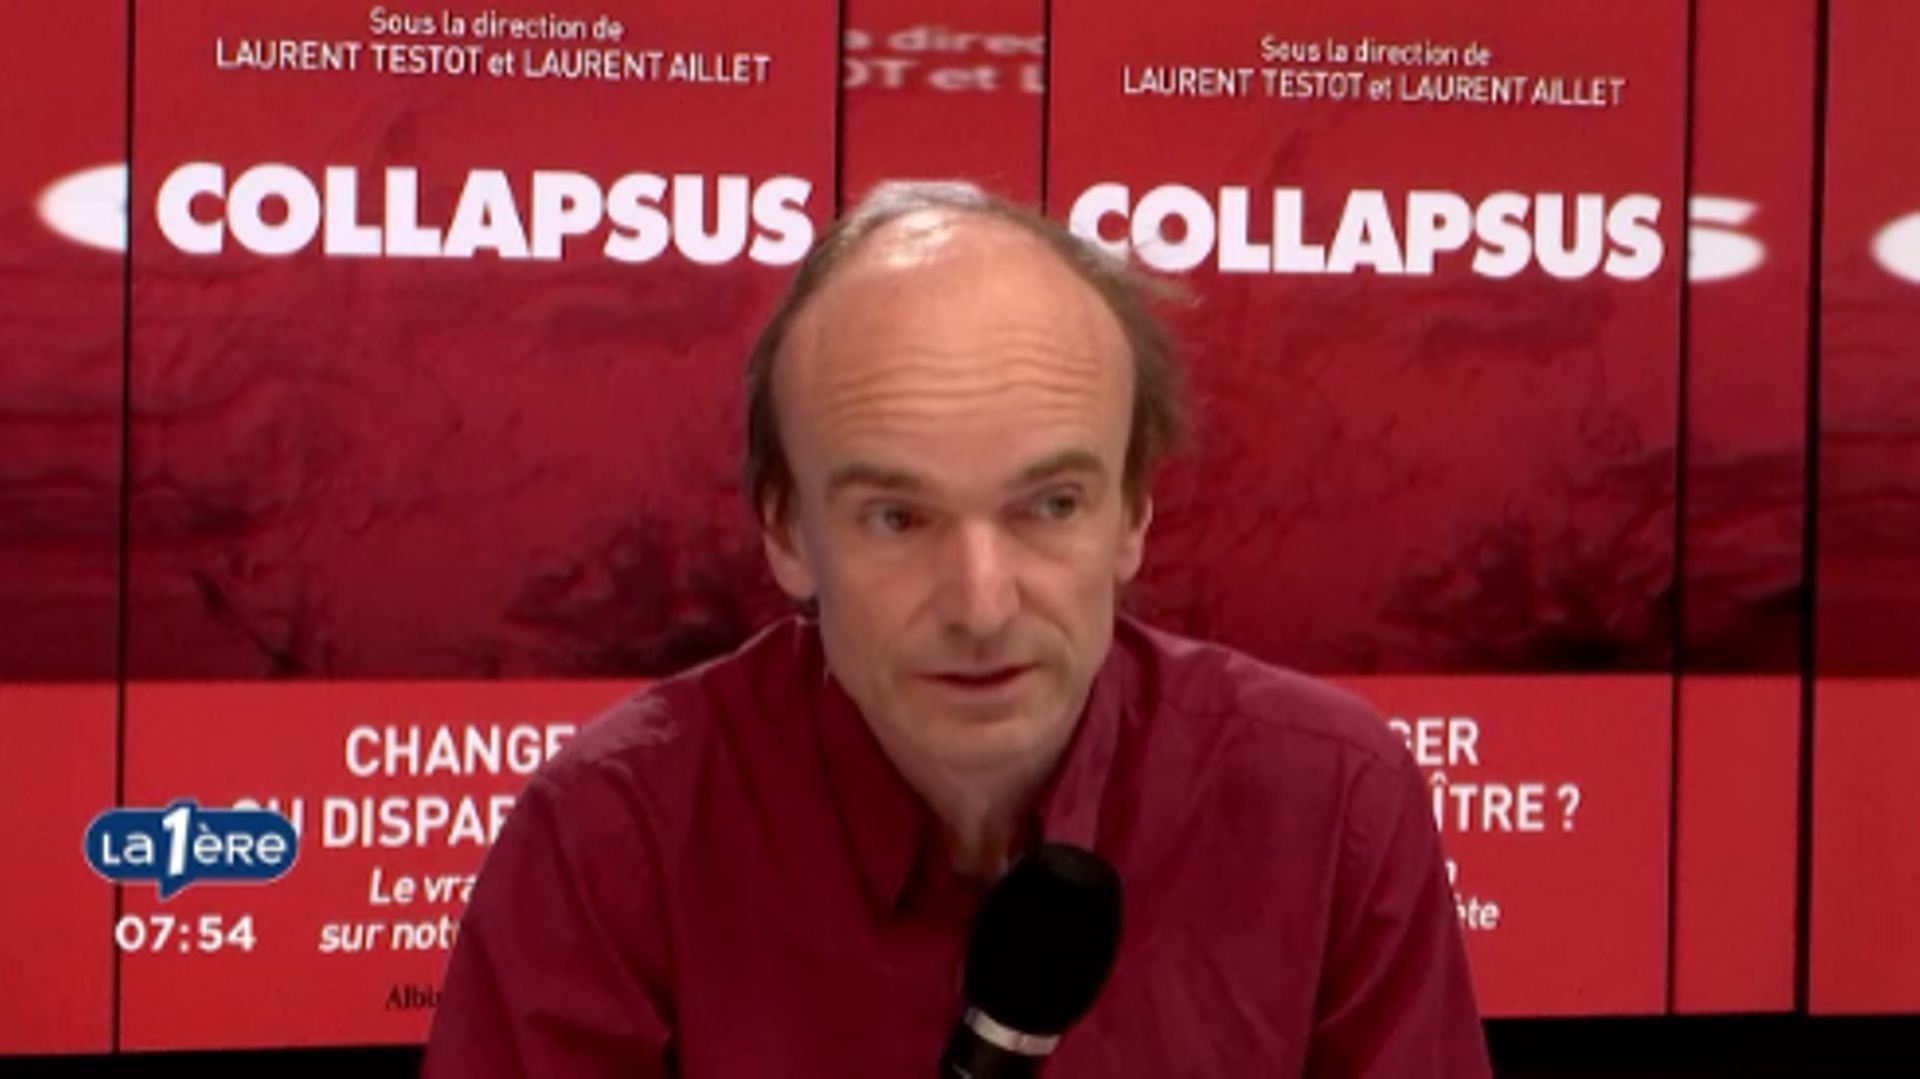 Laurent Testot (collapsologue) : "le catastrophisme c'est ce qui interviendra si on n'intervient pas politiquement"